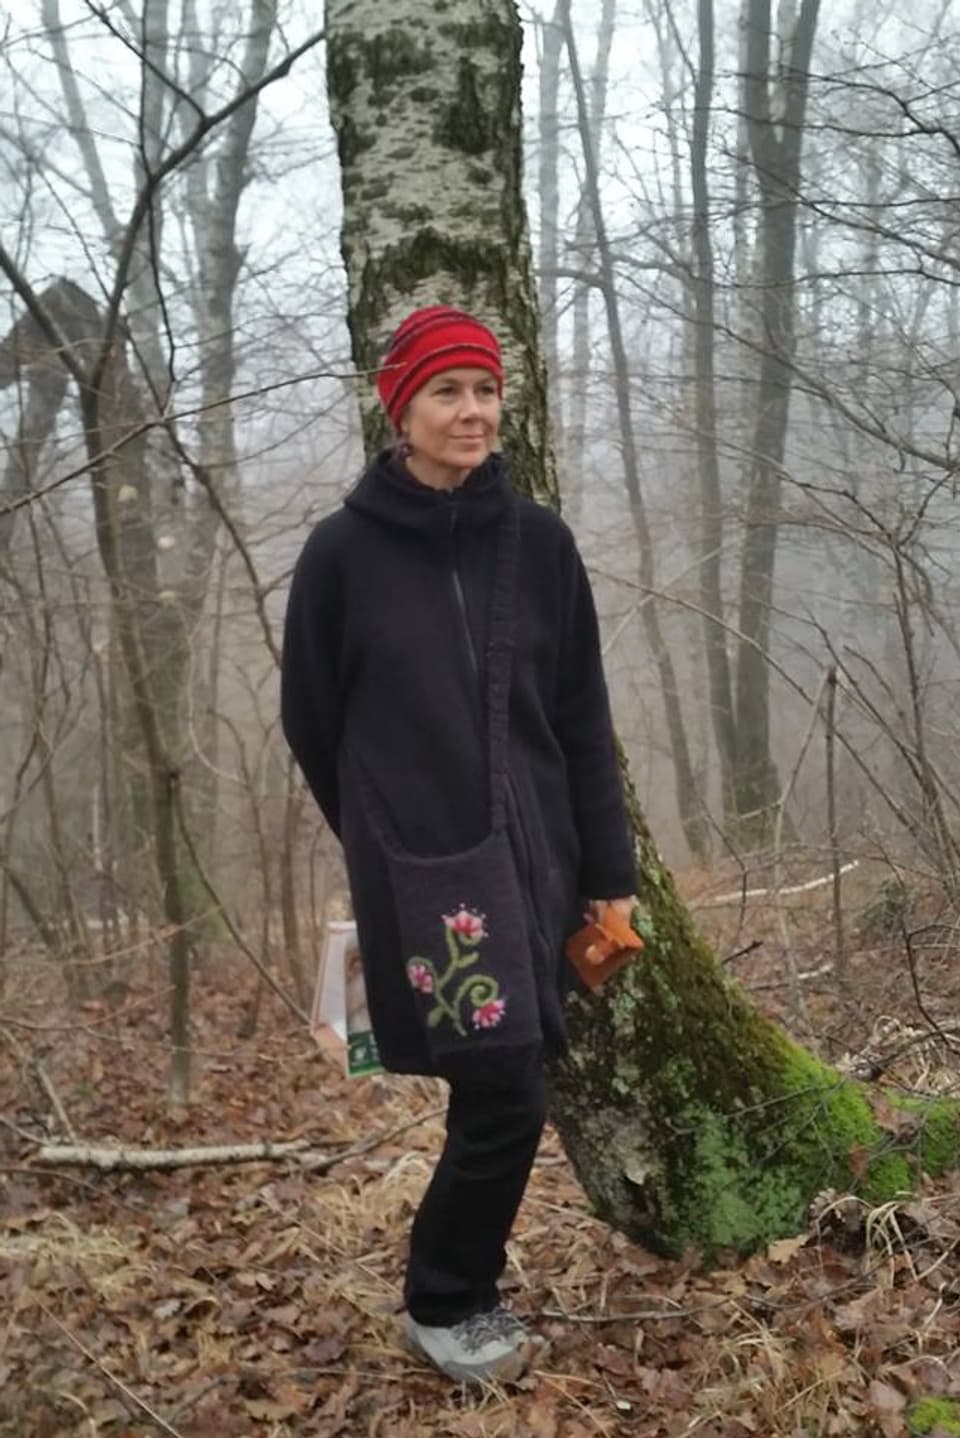 Frau im Wald mit roter Filzmütze.